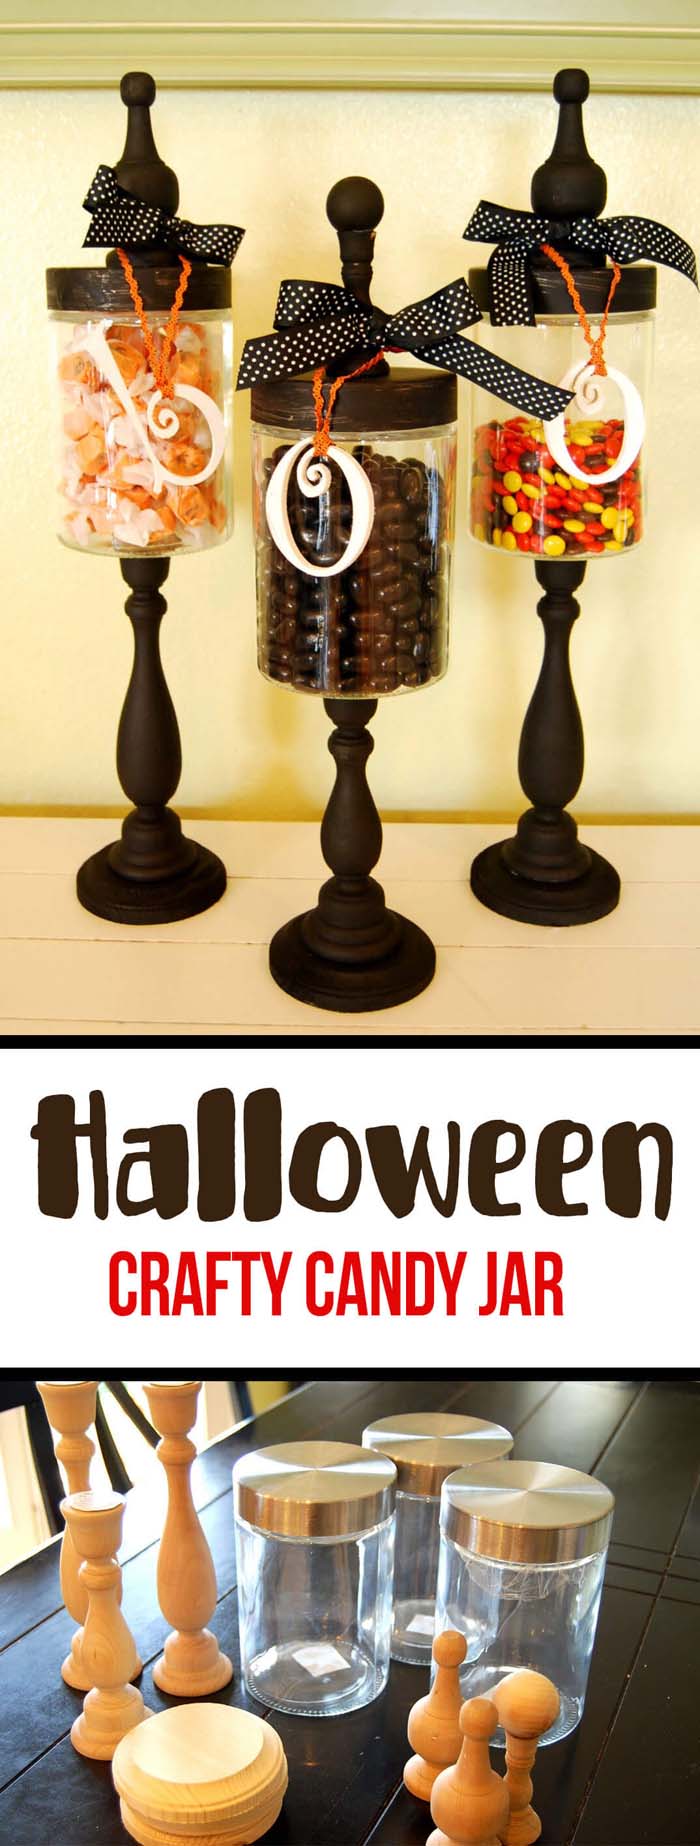 13. DIY Wicked Witch Storage Jars #halloween #masonjar #crafts #decorhomeideas